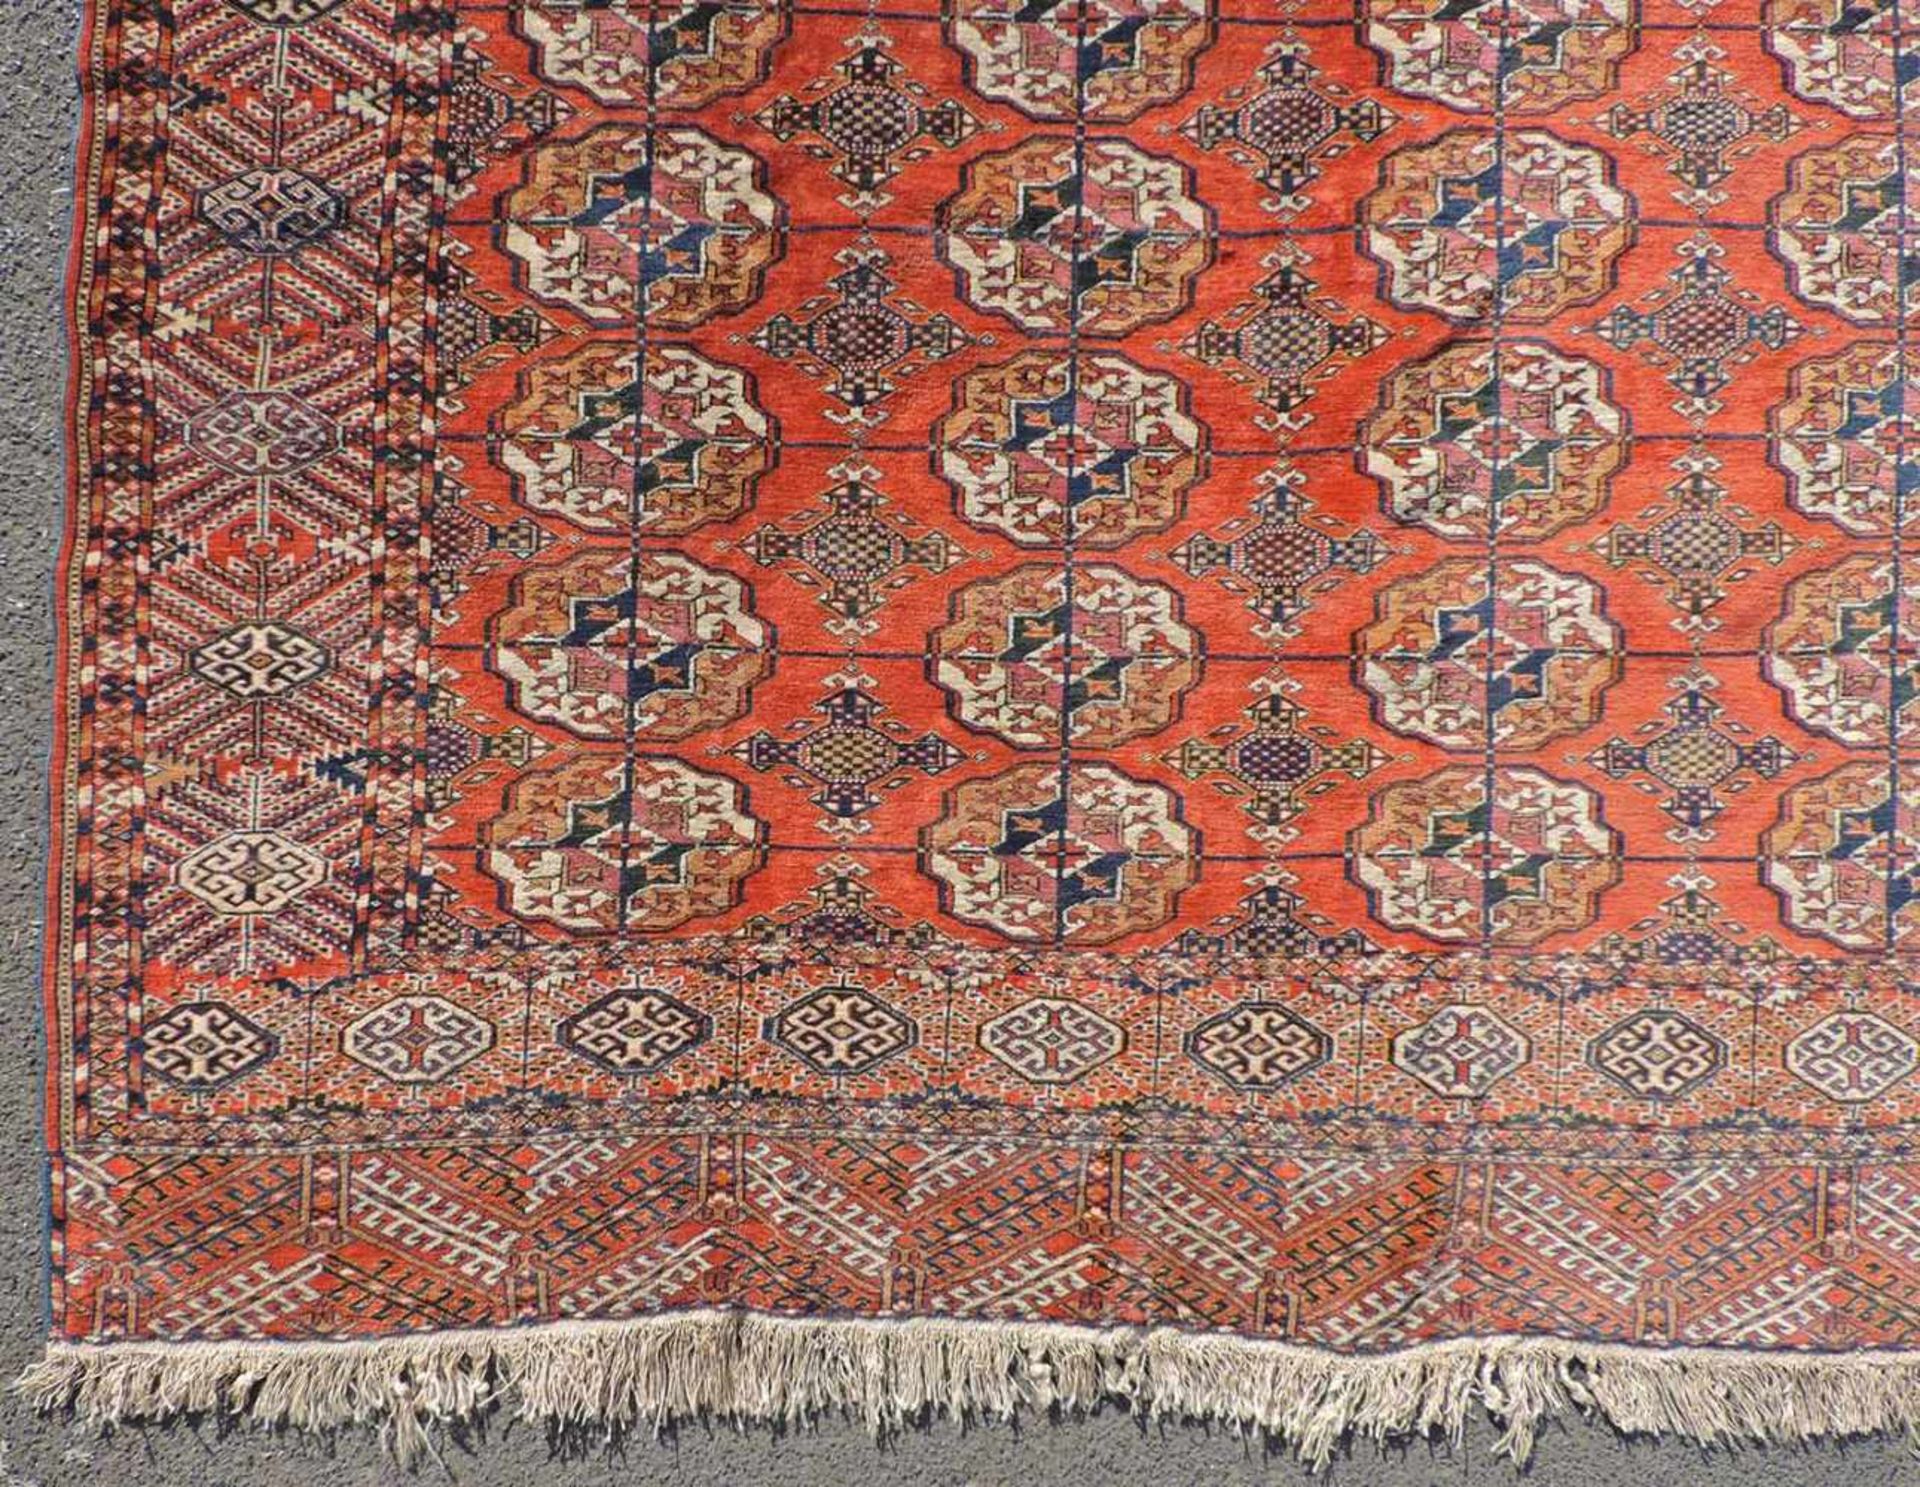 Jomud Stammesteppich. Iran. Antik, um 1910.309 cm x 210 cm. Handgeknüpft. Wolle auf Wolle. Göklan - Bild 2 aus 8